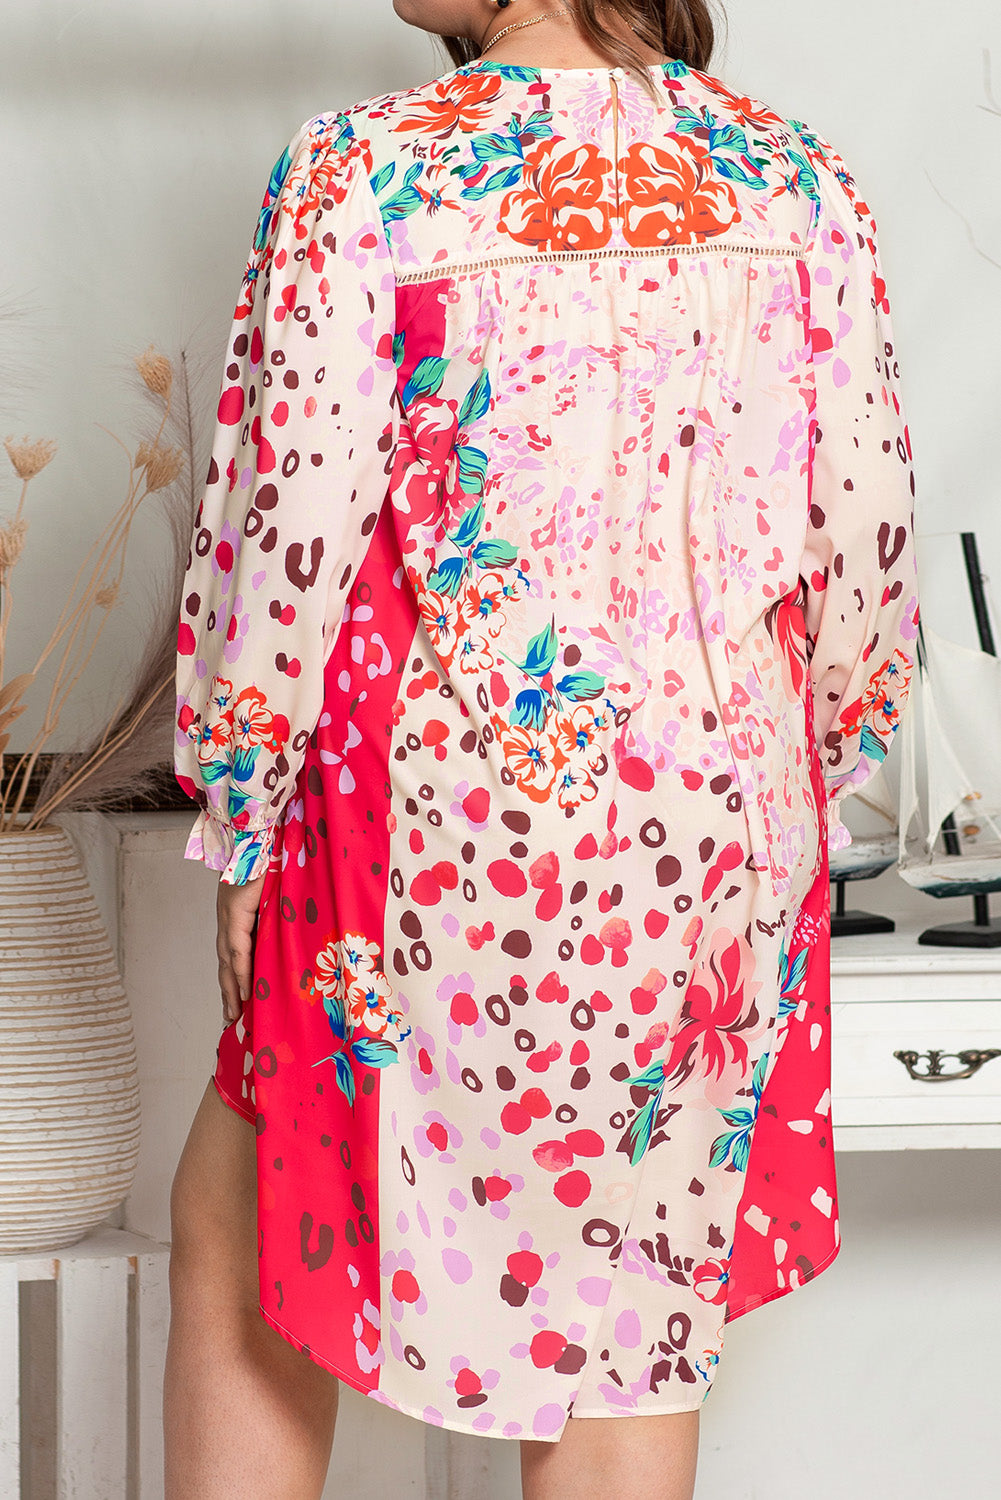 Prestavna obleka velike velikosti z dolgimi rokavi in ​​rožnatim cvetjem